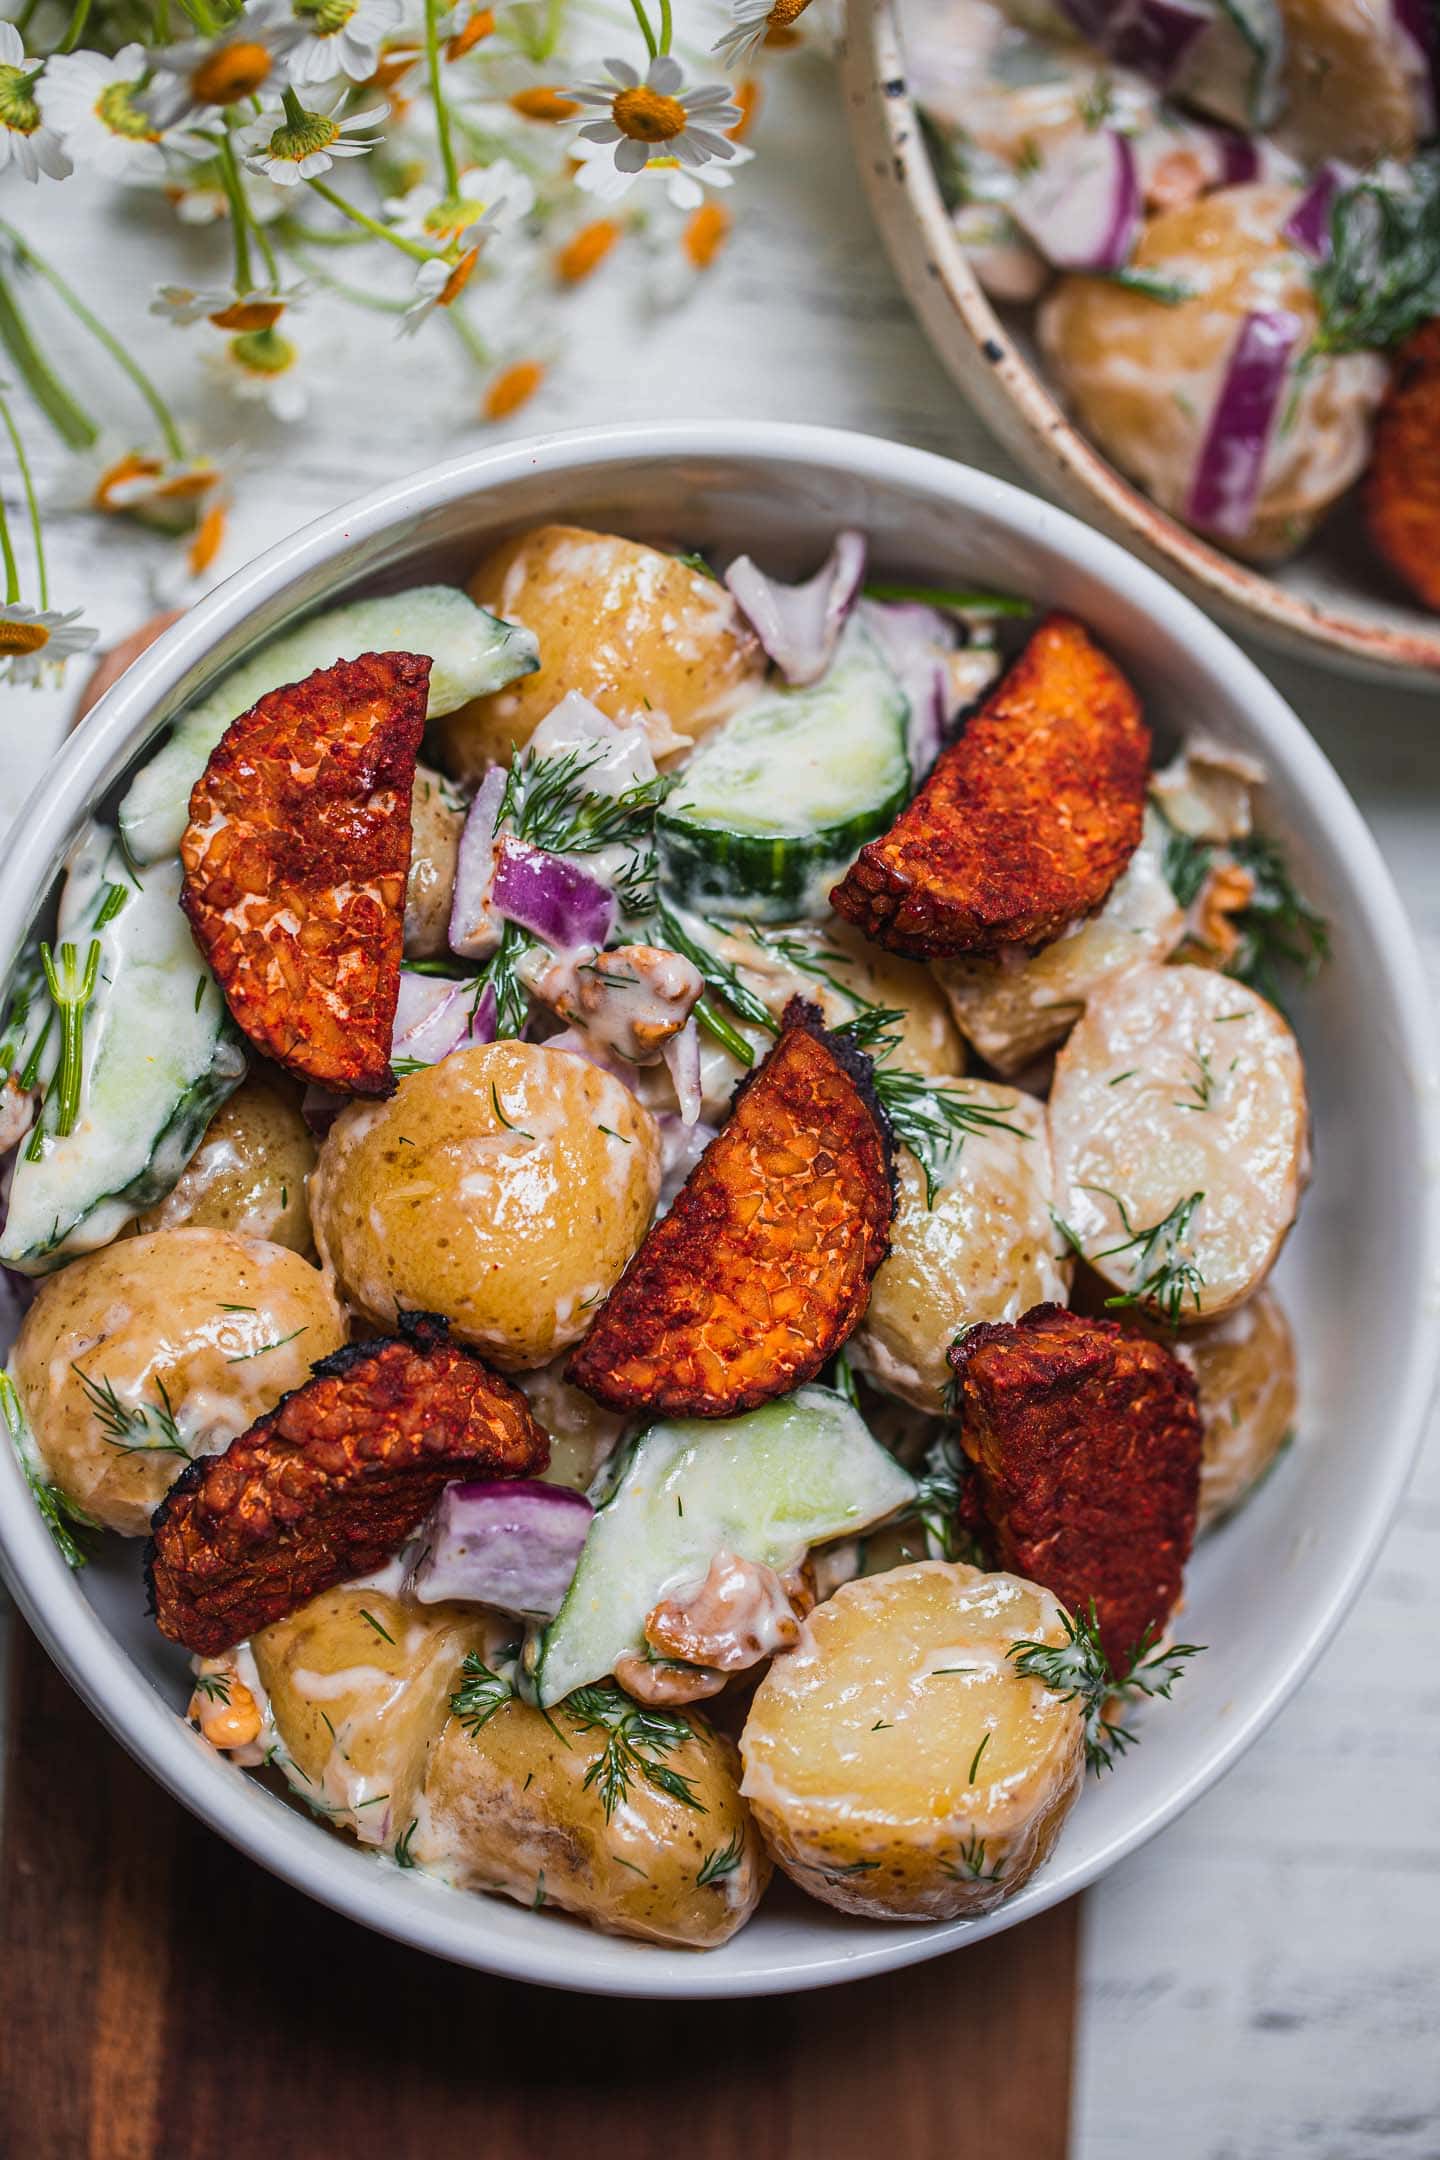 Vegan potato salad with herbs and tempeh